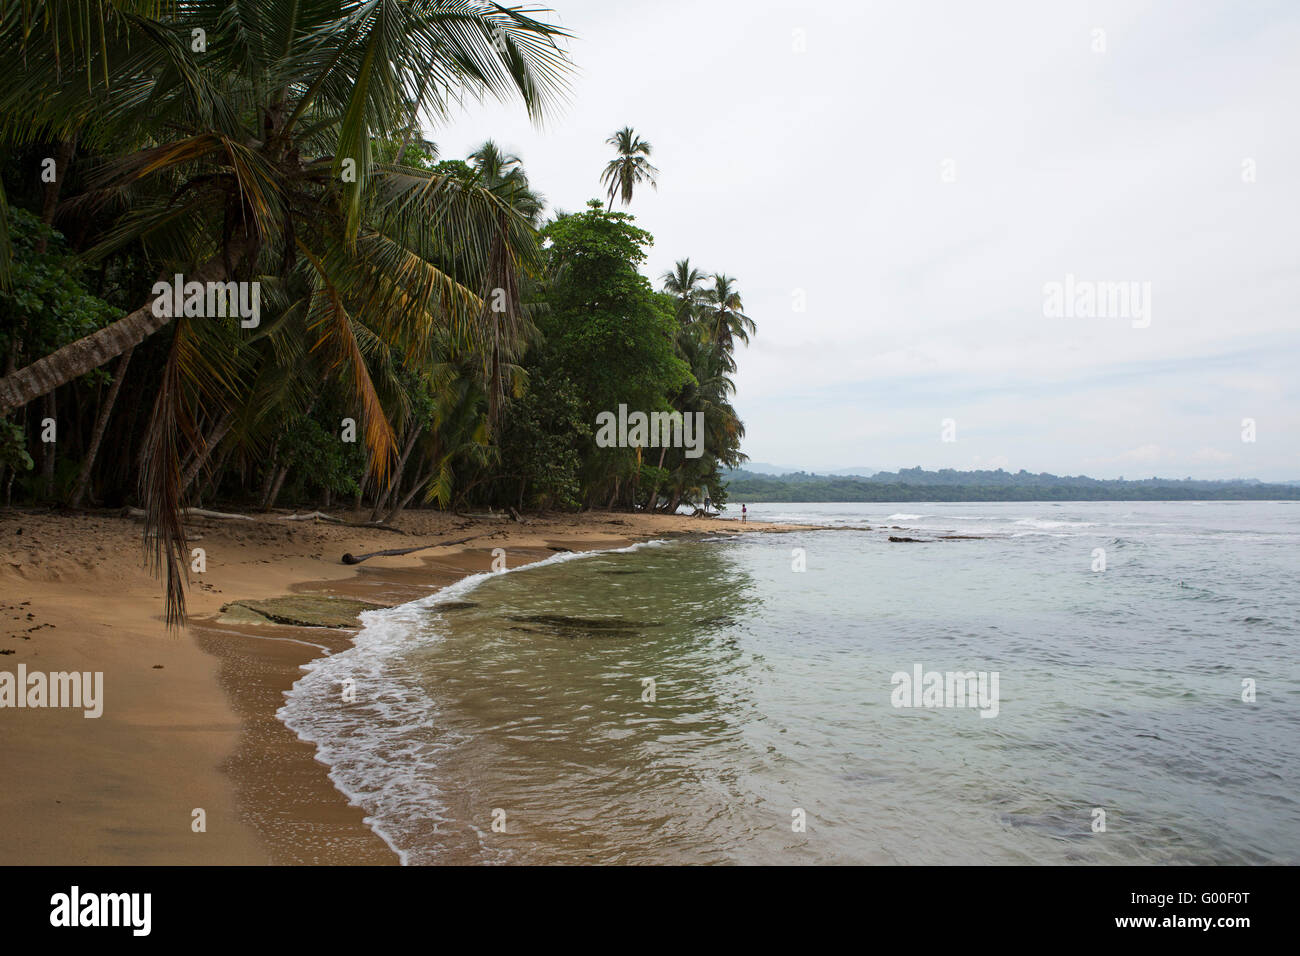 Das Karibische Meer runden Playa Manzanillo in Costa Rica. Der Strand liegt in der Nähe von Puerto Viejo Limon Provinz des Landes. Stockfoto